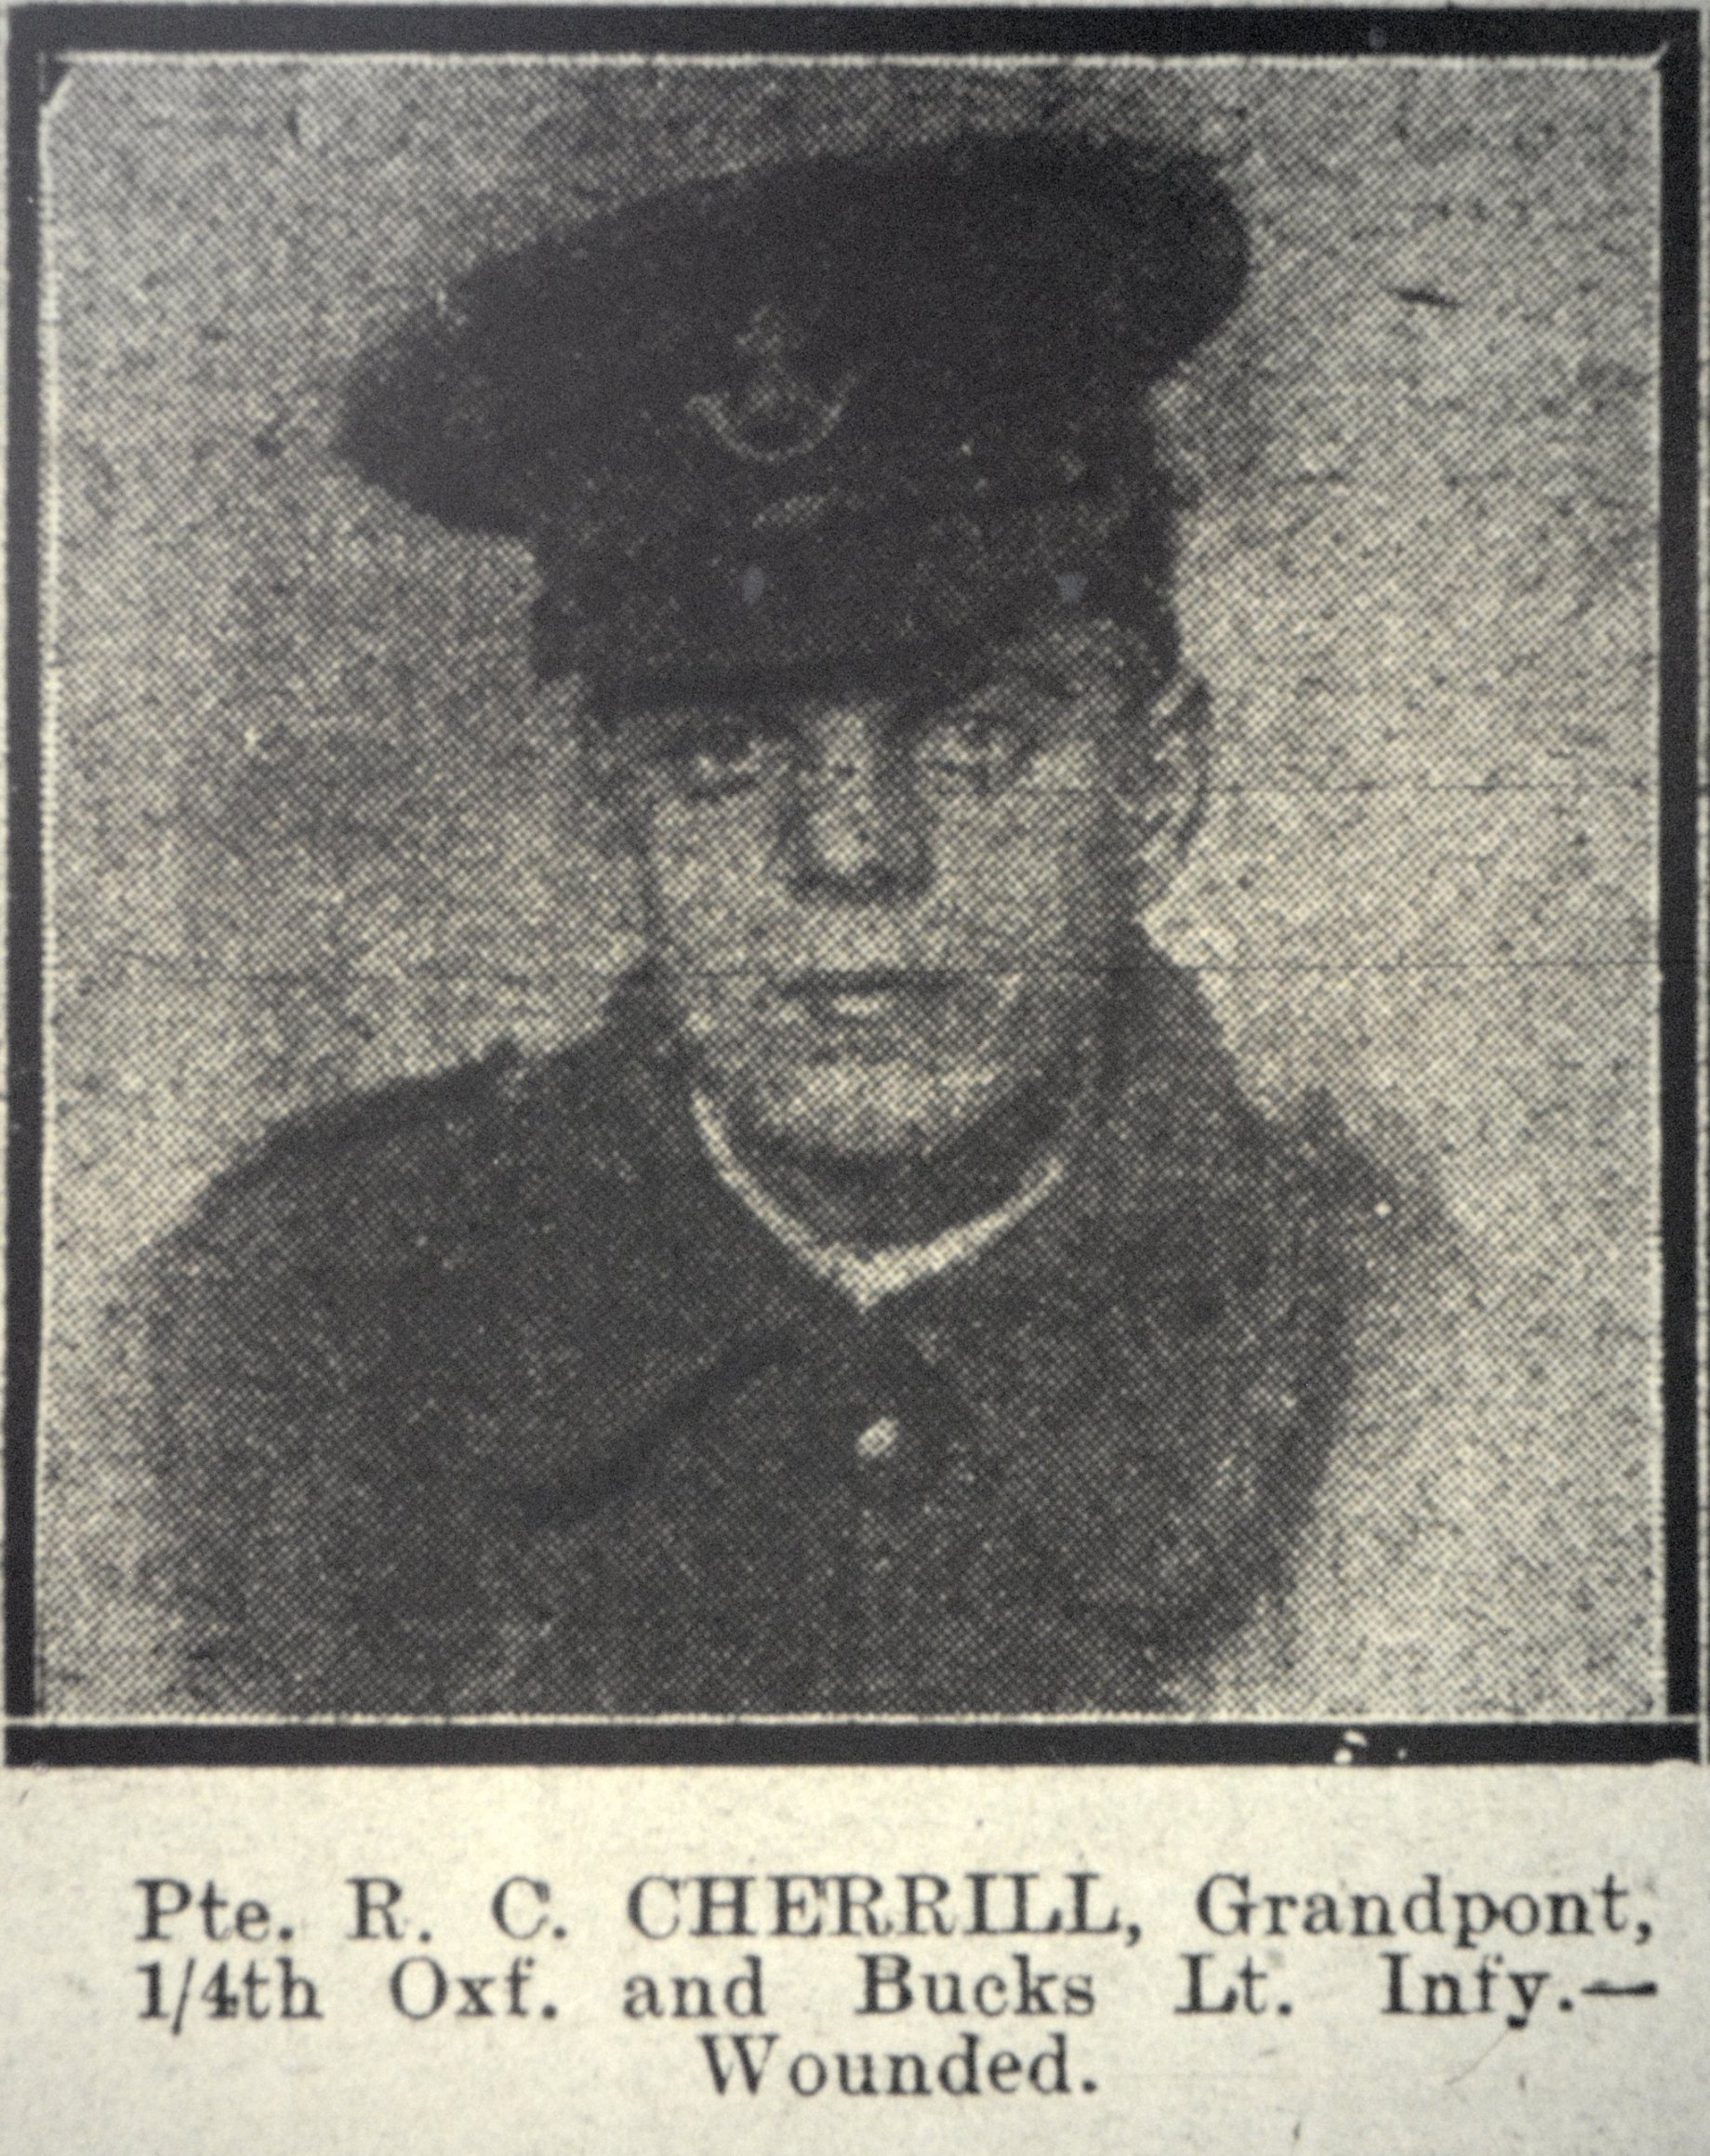 Cherrill wounded OJI 16-08-1916 p6 smaller